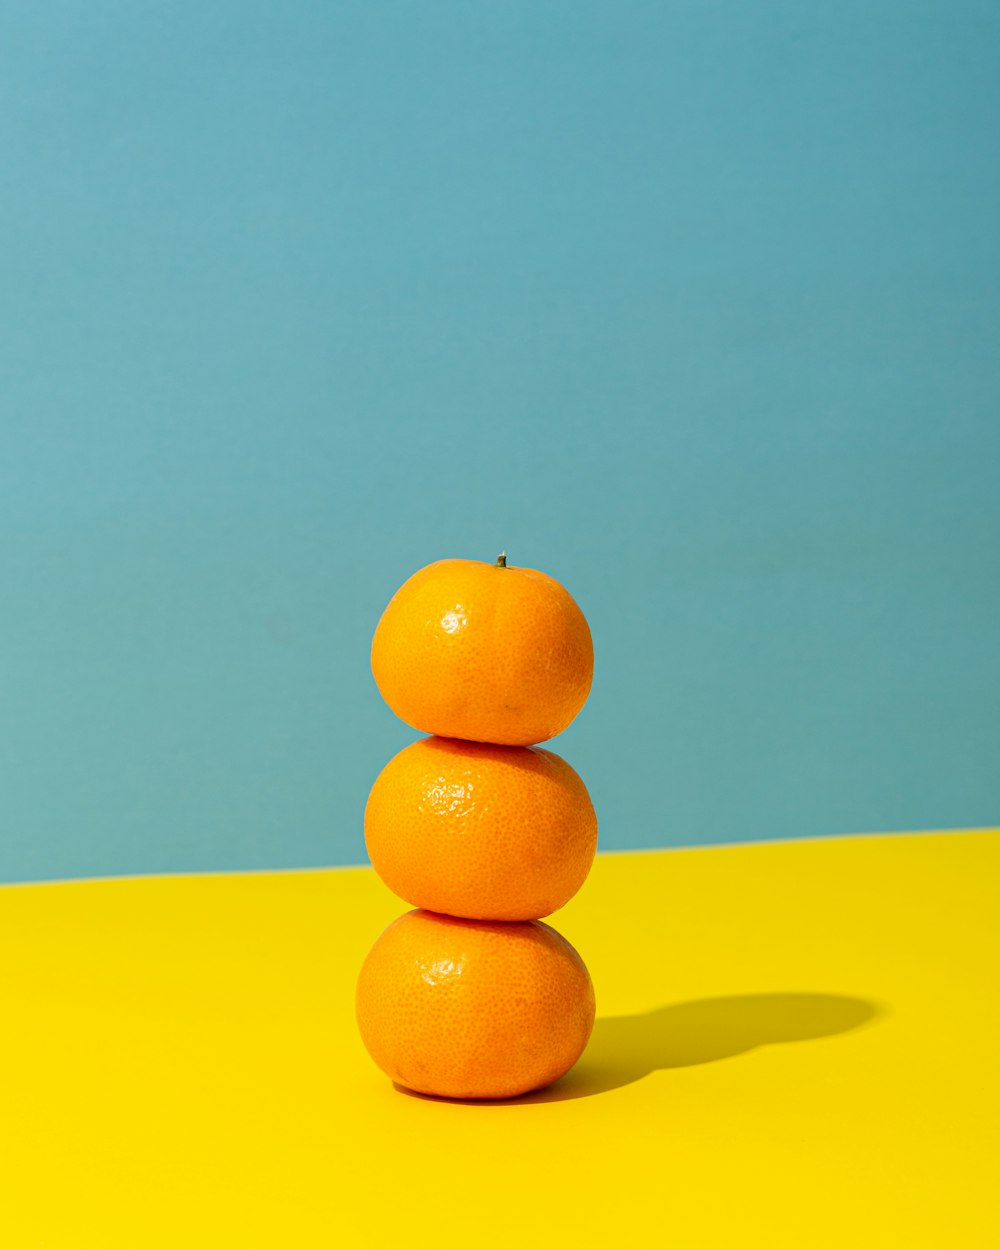 黄色い表面にオレンジ色の果実